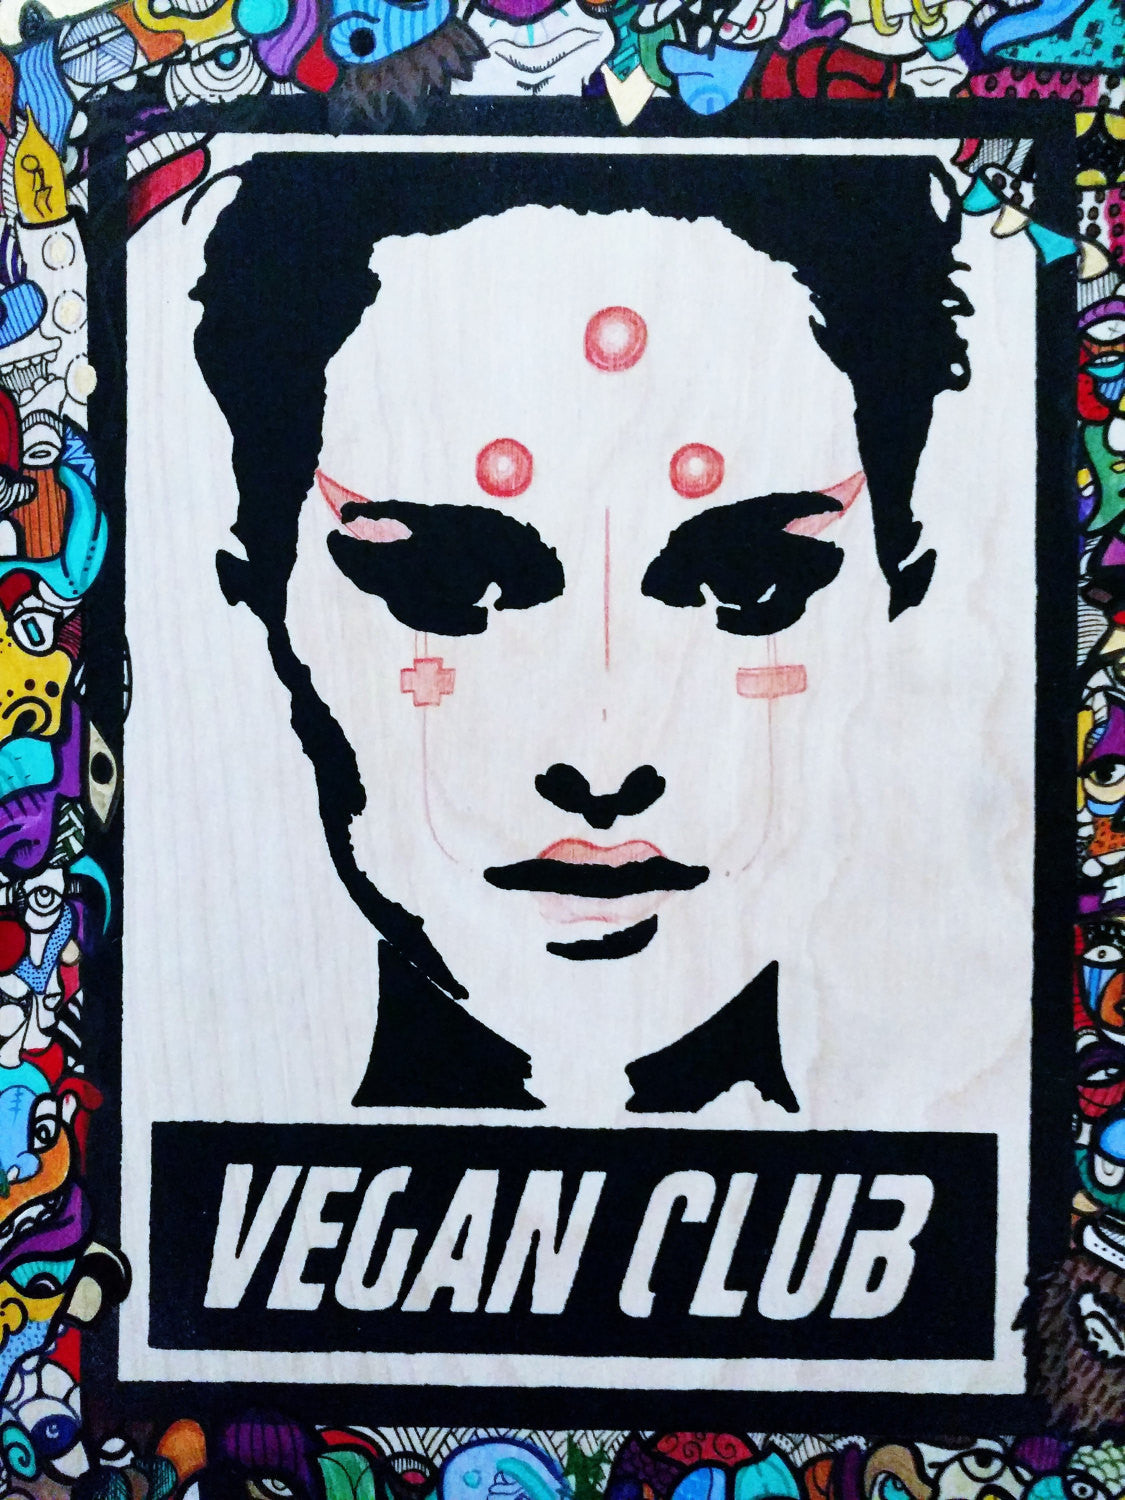 11x14 Original Artwork Collab w @sentient.zero "Vegan Club" feat Natalie Portman